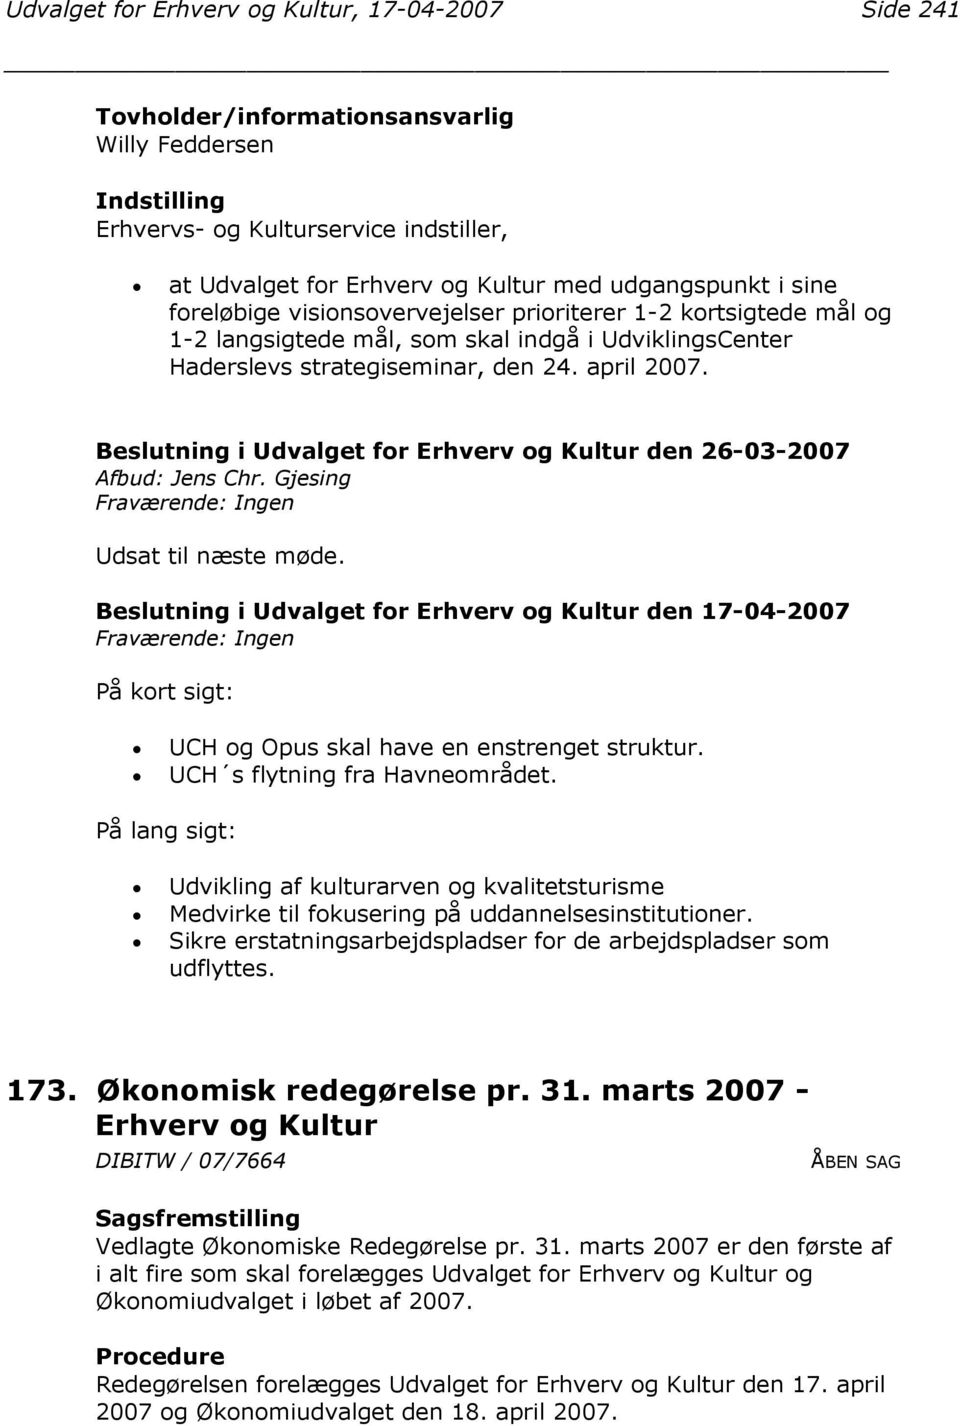 Beslutning i Udvalget for Erhverv og Kultur den 26-03-2007 Afbud: Jens Chr. Gjesing Udsat til næste møde. På kort sigt: UCH og Opus skal have en enstrenget struktur. UCH s flytning fra Havneområdet.